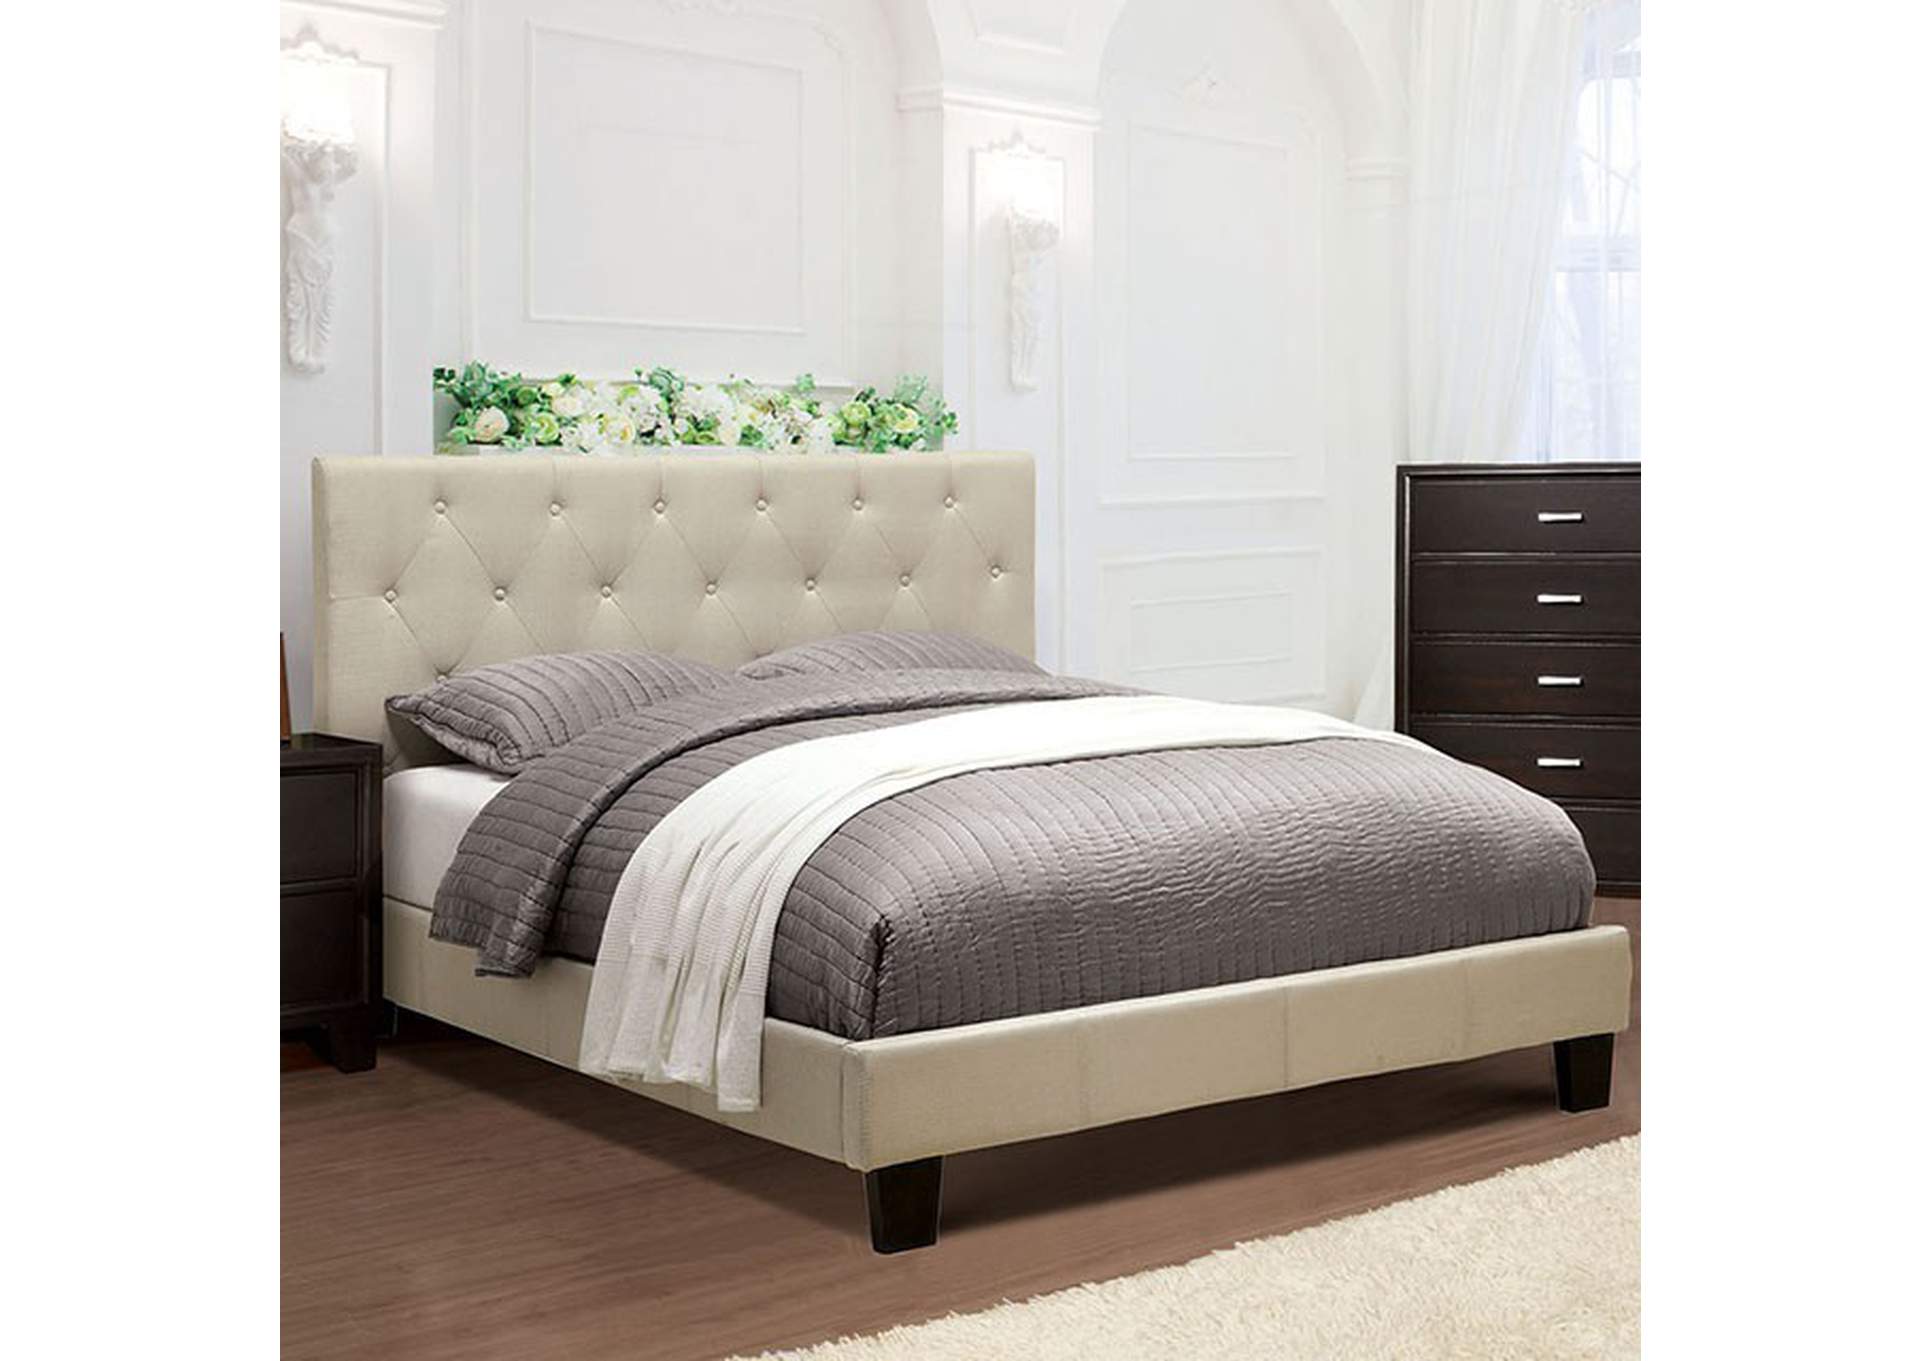 Leeroy Full Bed,Furniture of America